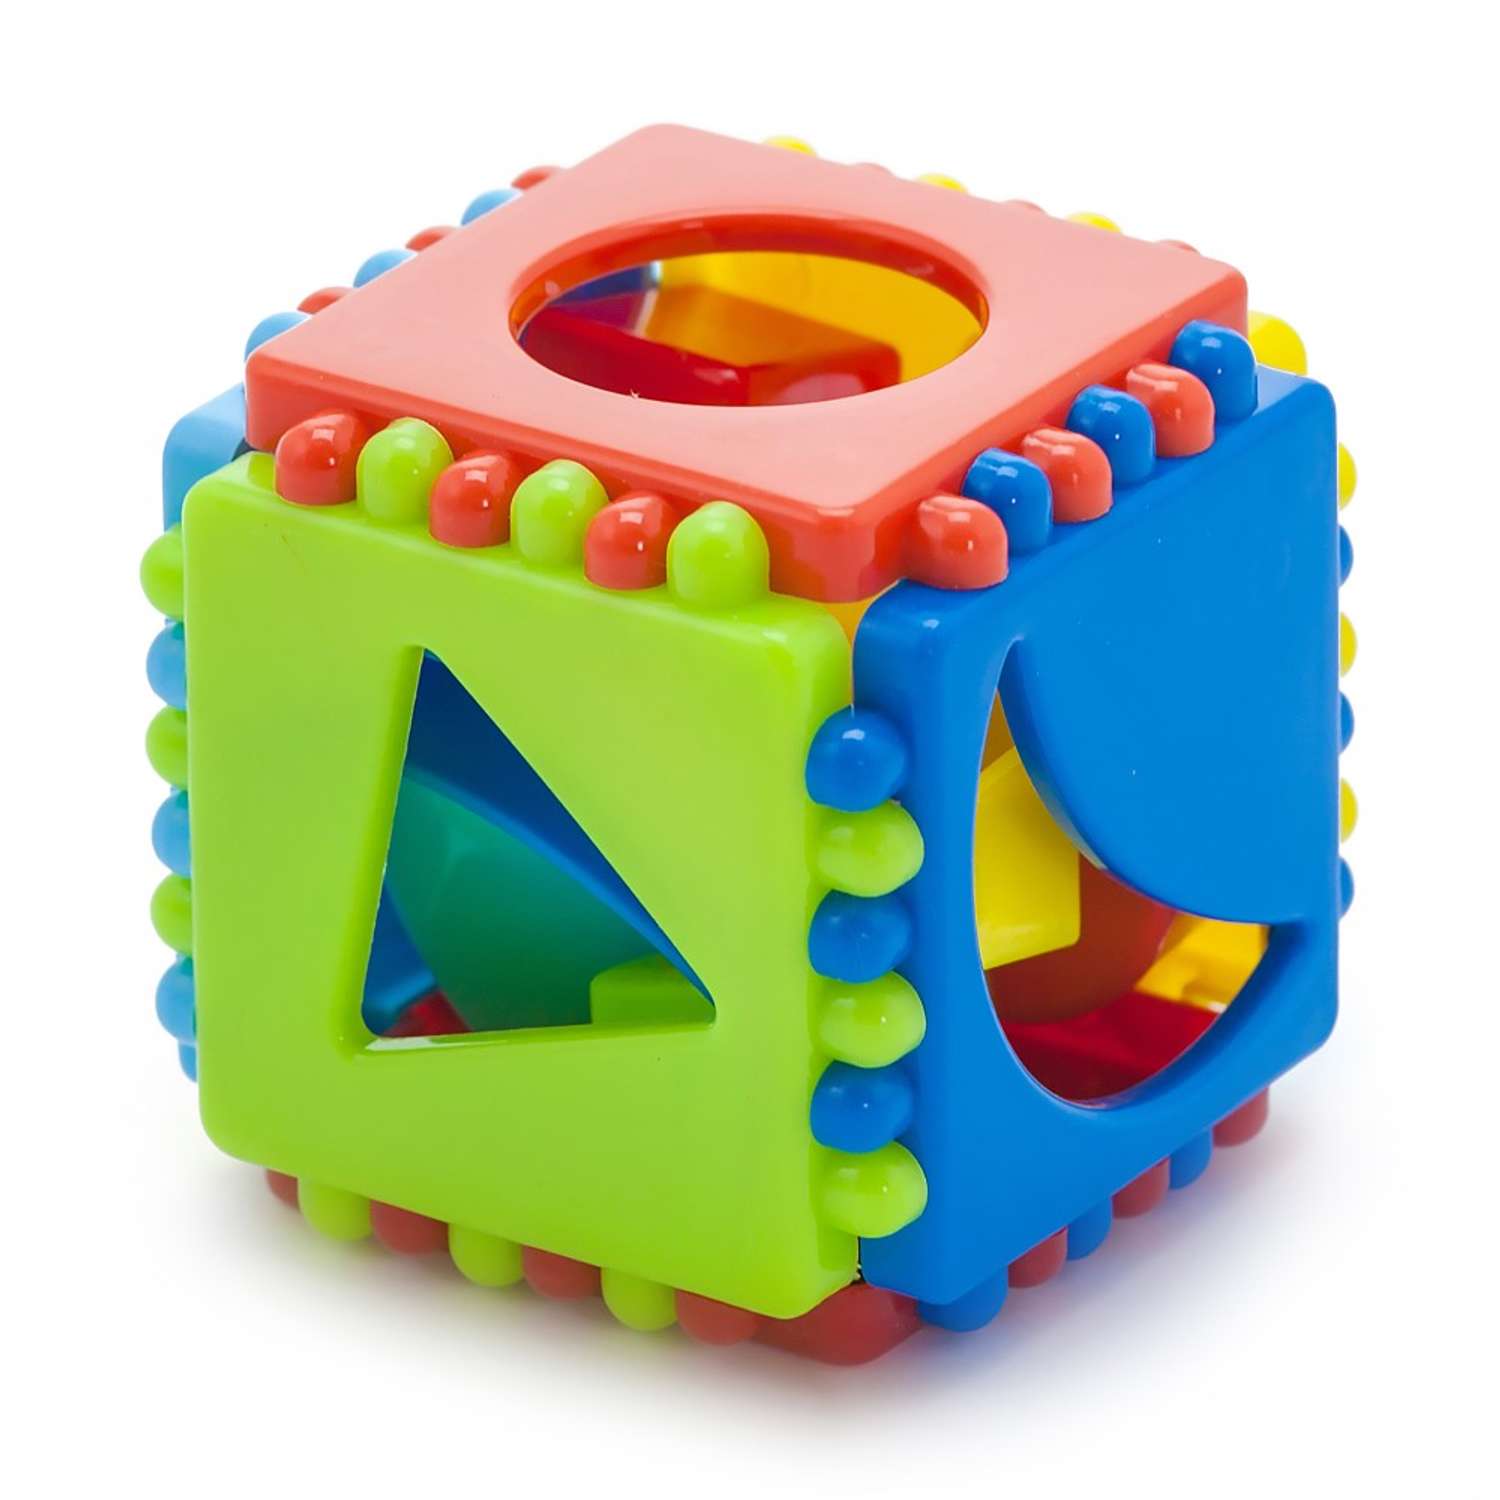 Развивающие игрушки БИПЛАНТ для малышей конструктор Кноп-Кнопыч 61 деталь + Сортер кубик малый + Команда КВА - фото 11